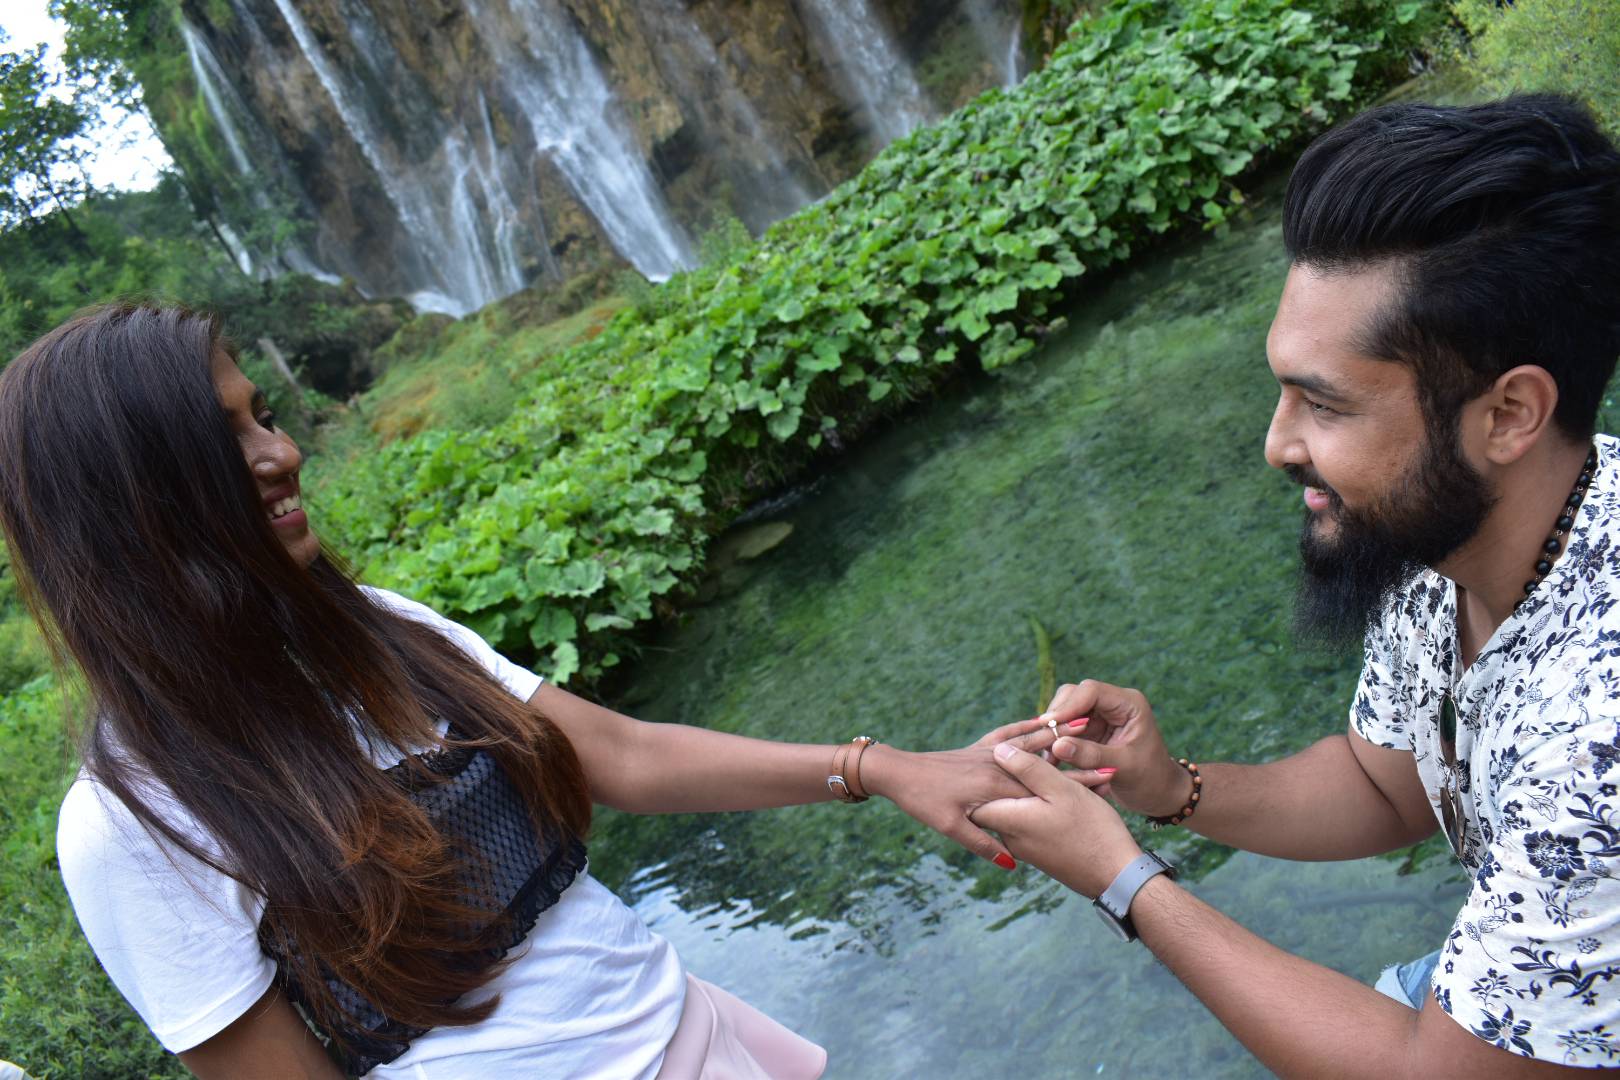 Mladić iz Dubaija na Plitvičkim jezerima zaprosio svoju curu